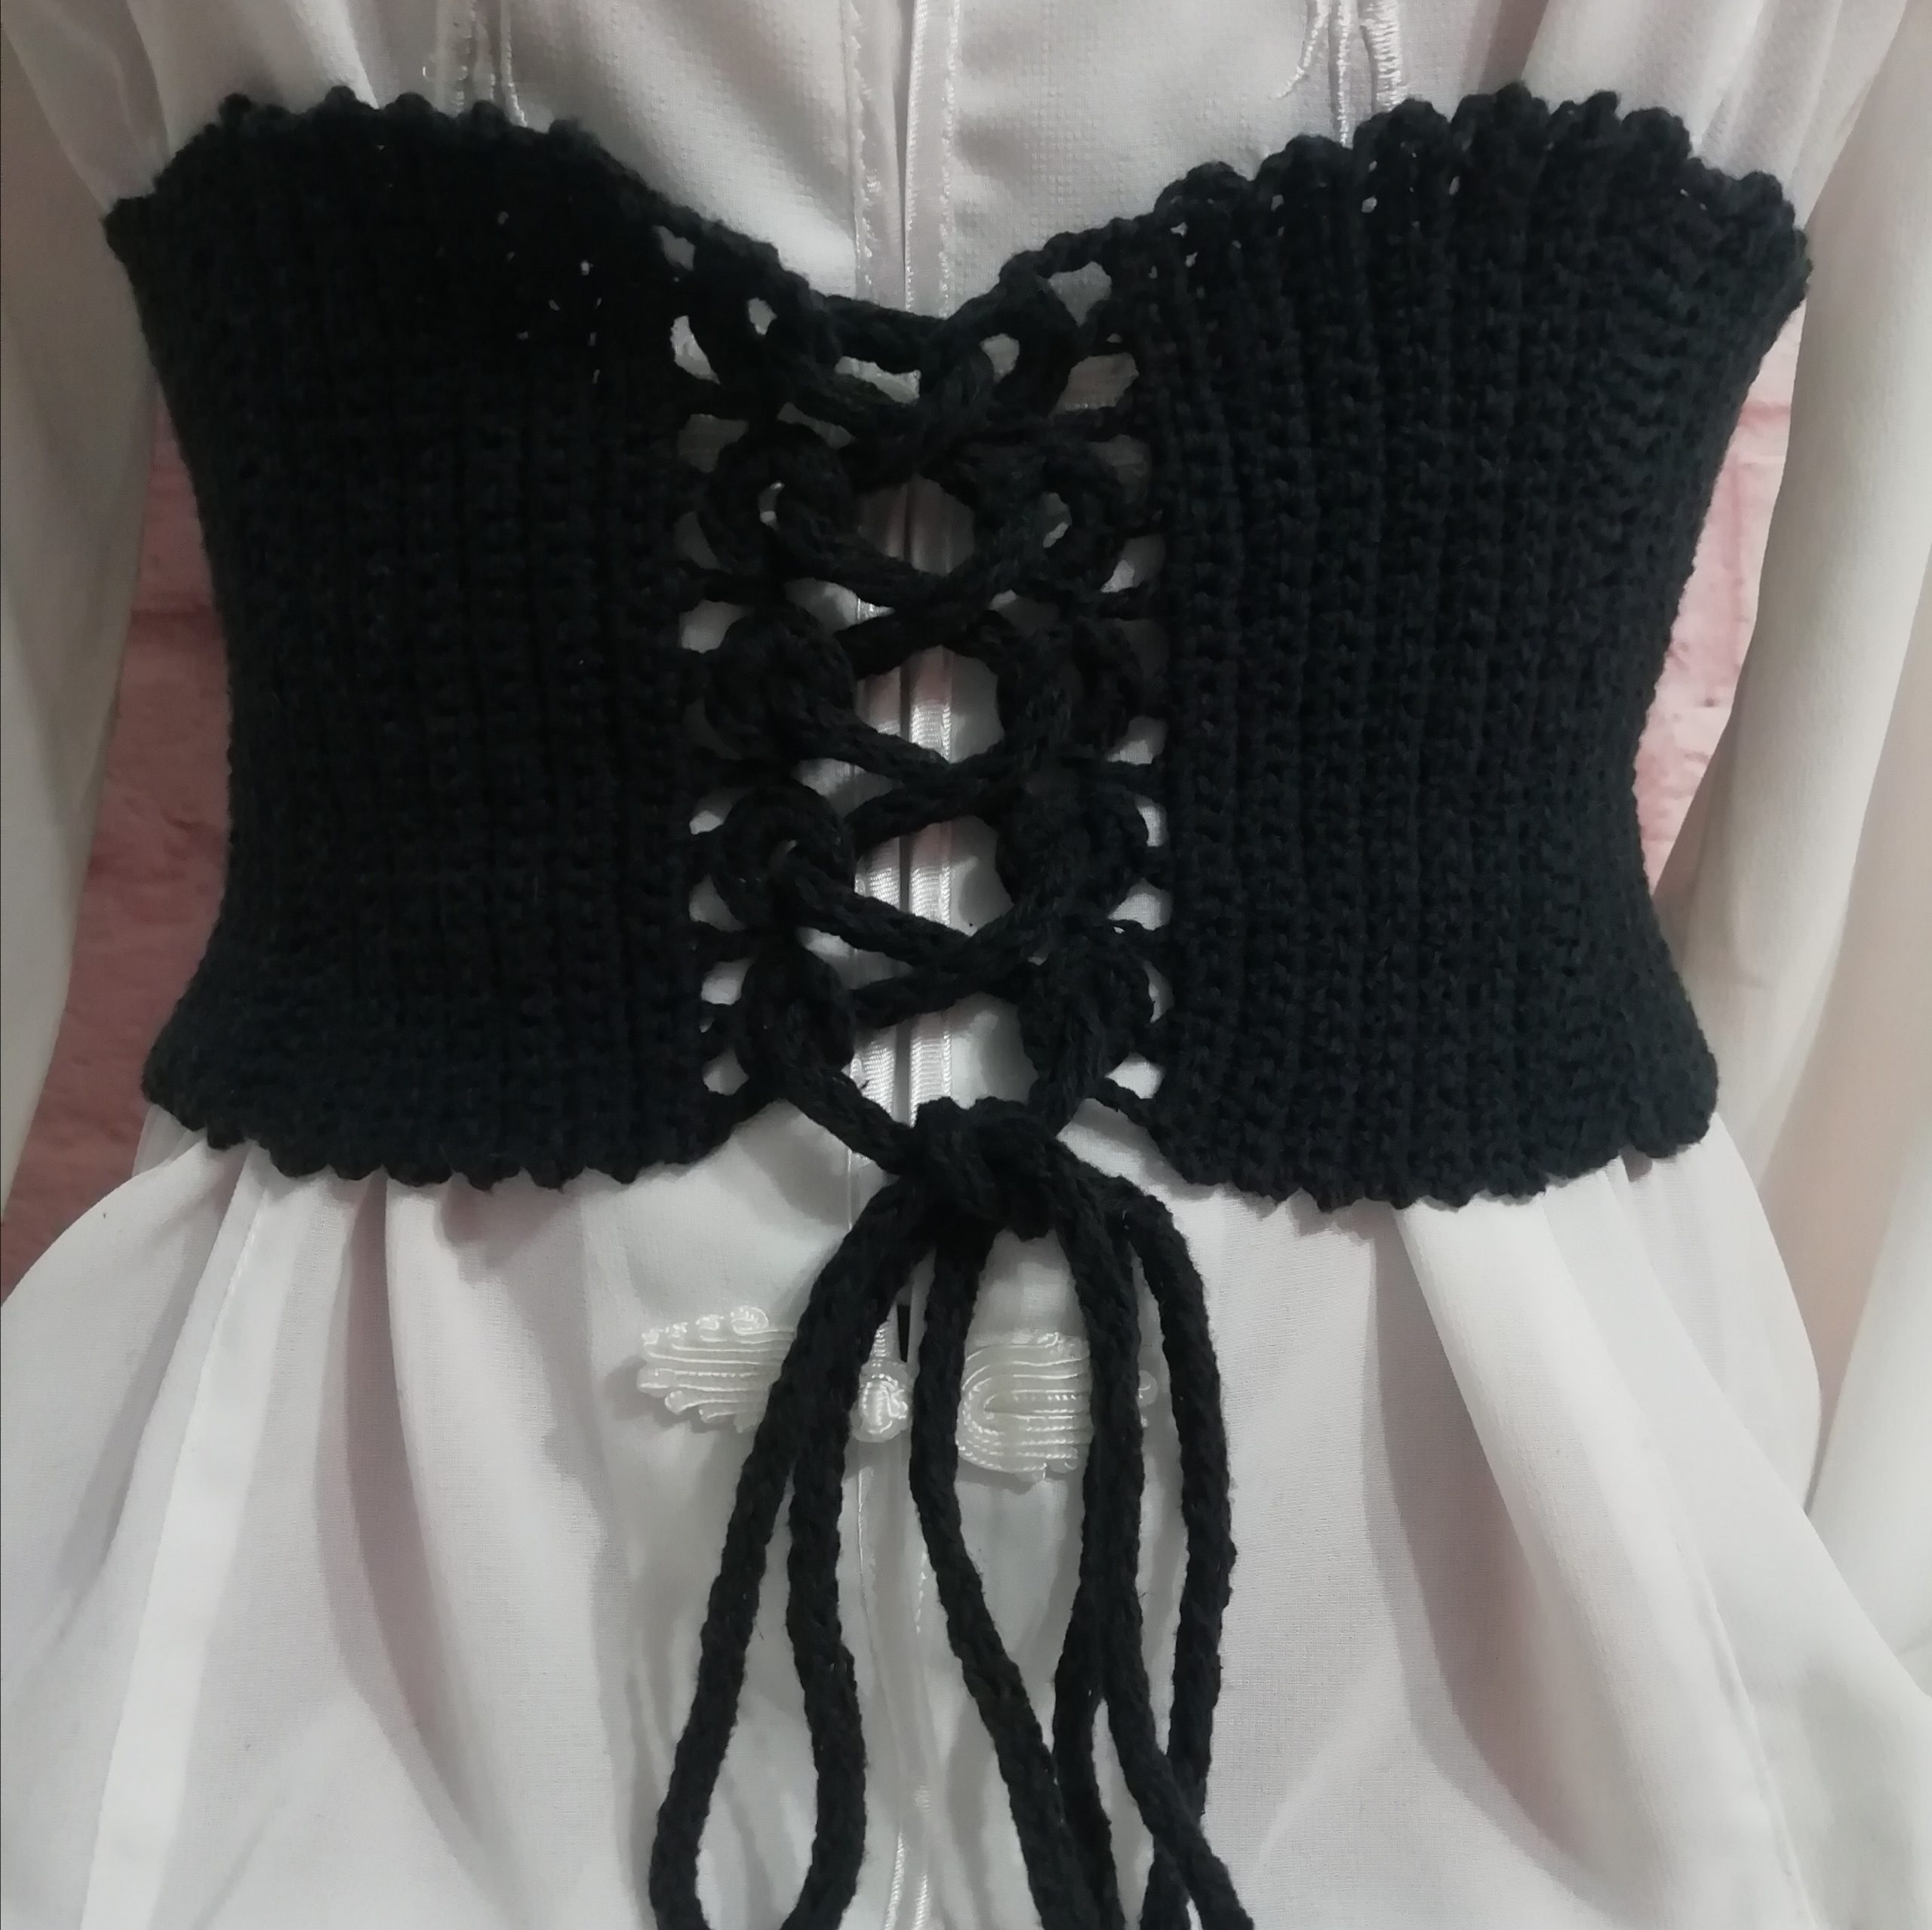 Corset belt tutorial, underbust corset